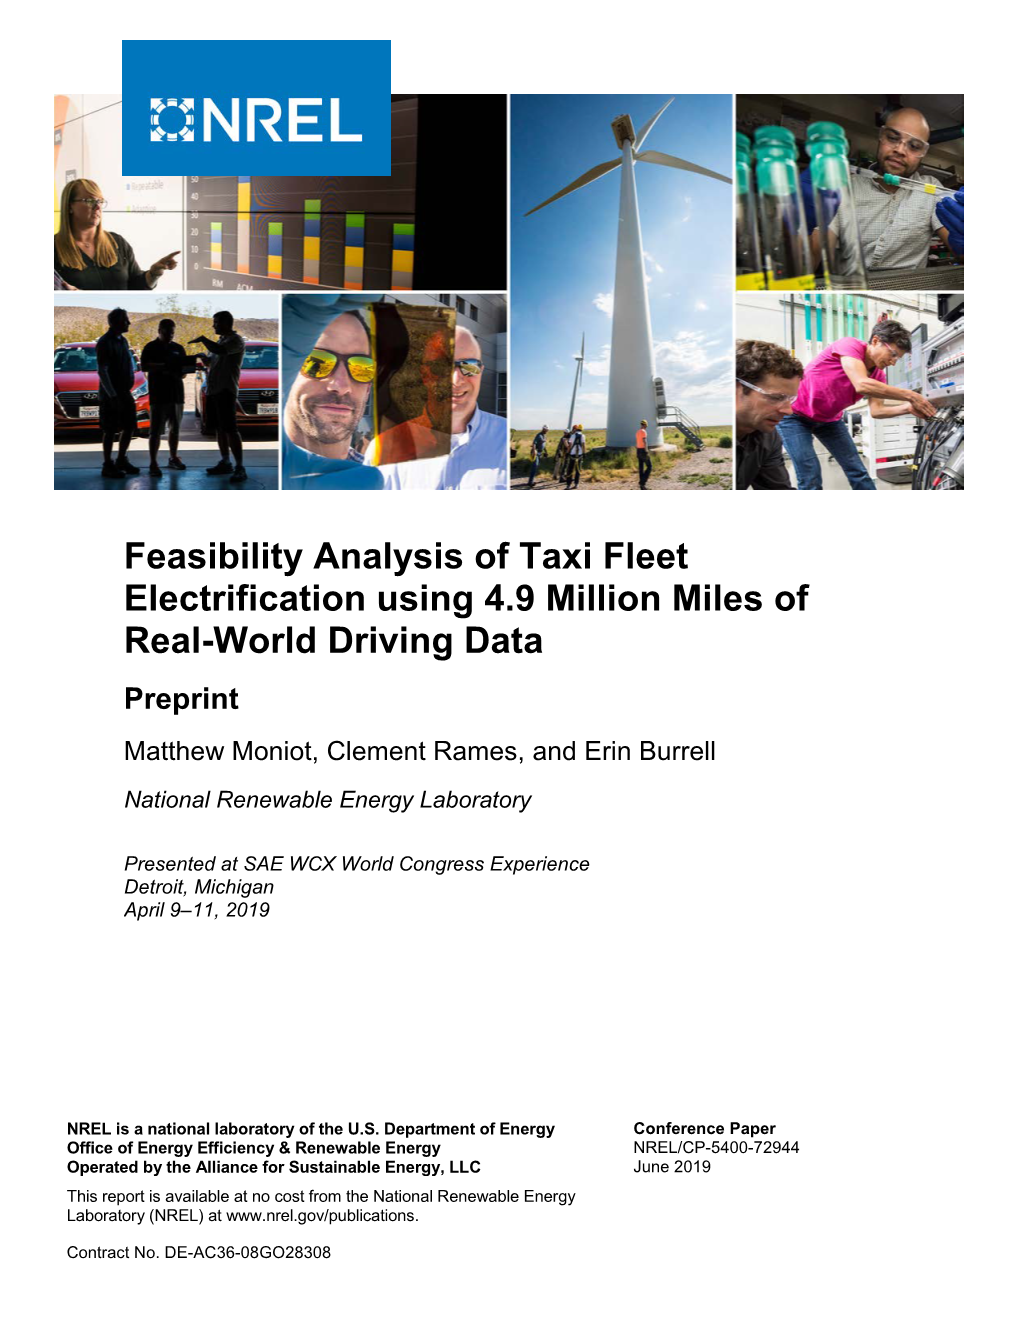 Feasibility Analysis of Taxi Fleet Electrification Using 4.9 Million